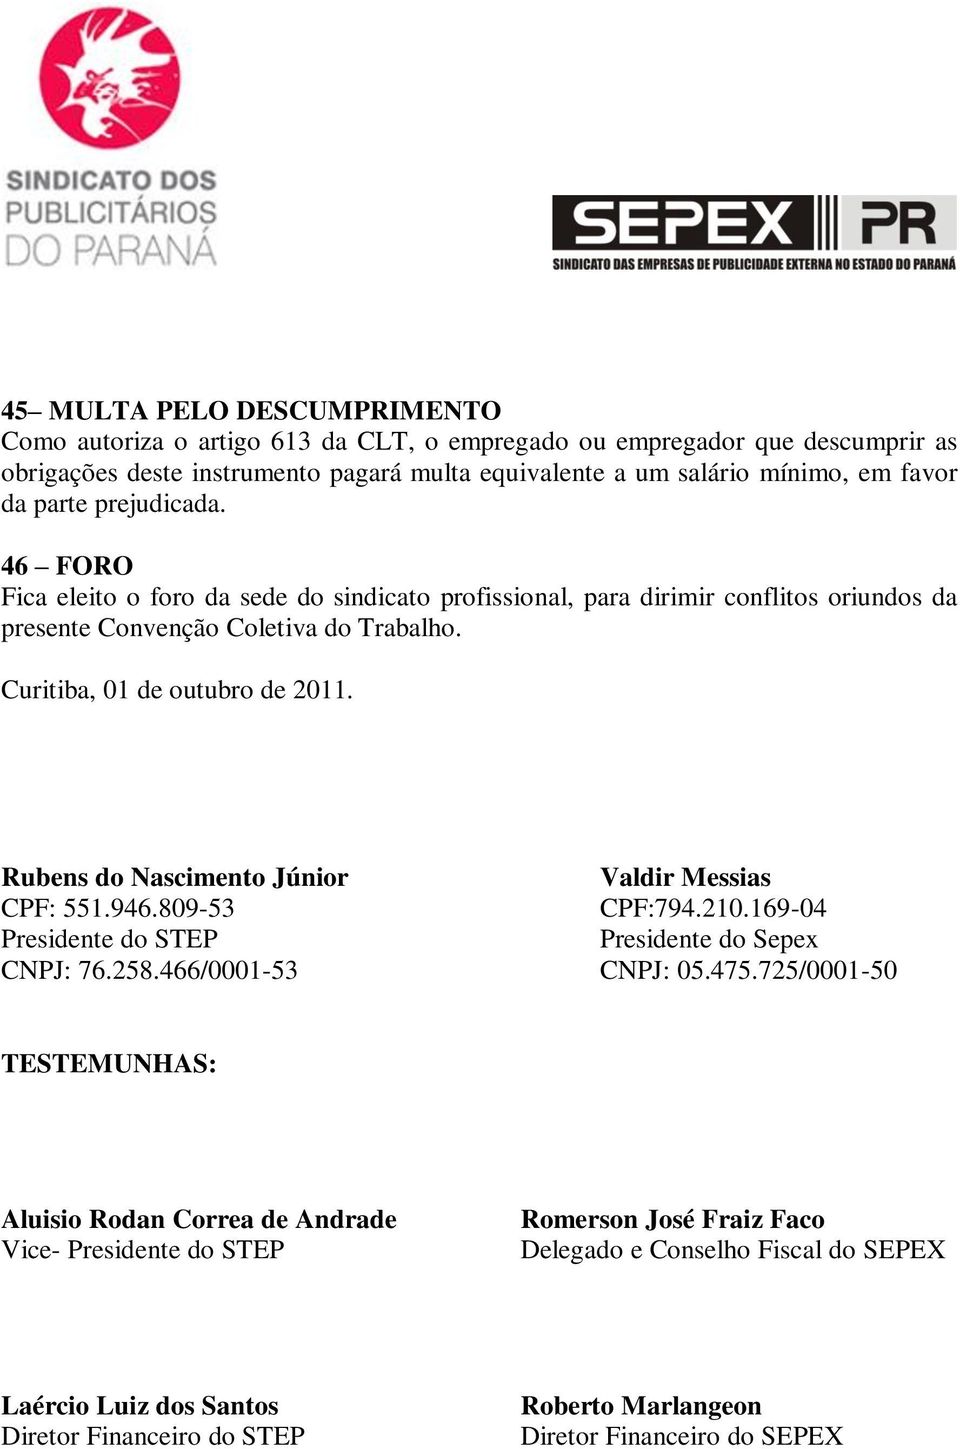 Rubens do Nascimento Júnior CPF: 551.946.809-53 Presidente do STEP CNPJ: 76.258.466/0001-53 Valdir Messias CPF:794.210.169-04 Presidente do Sepex CNPJ: 05.475.